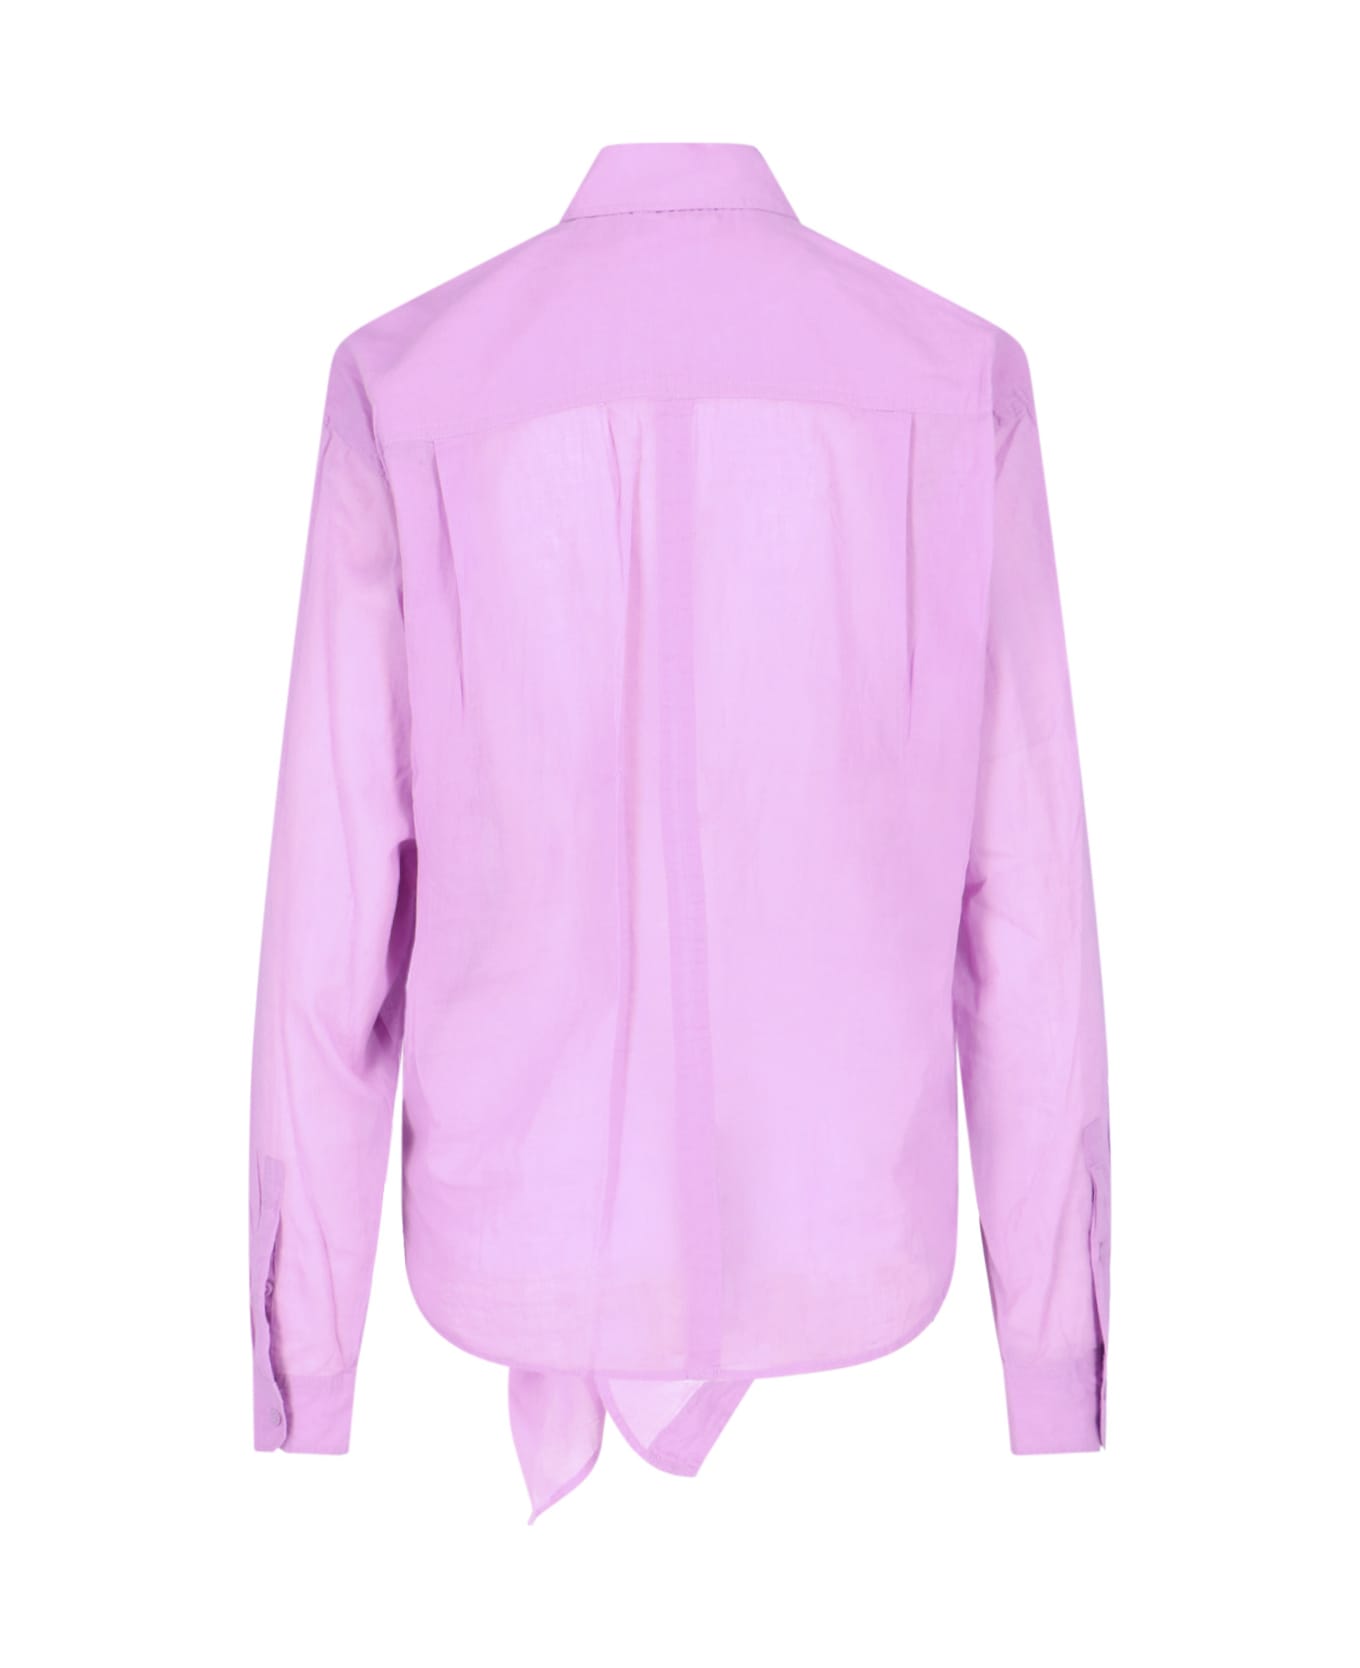 Marant Étoile Nath Cotton Shirt - Violet シャツ